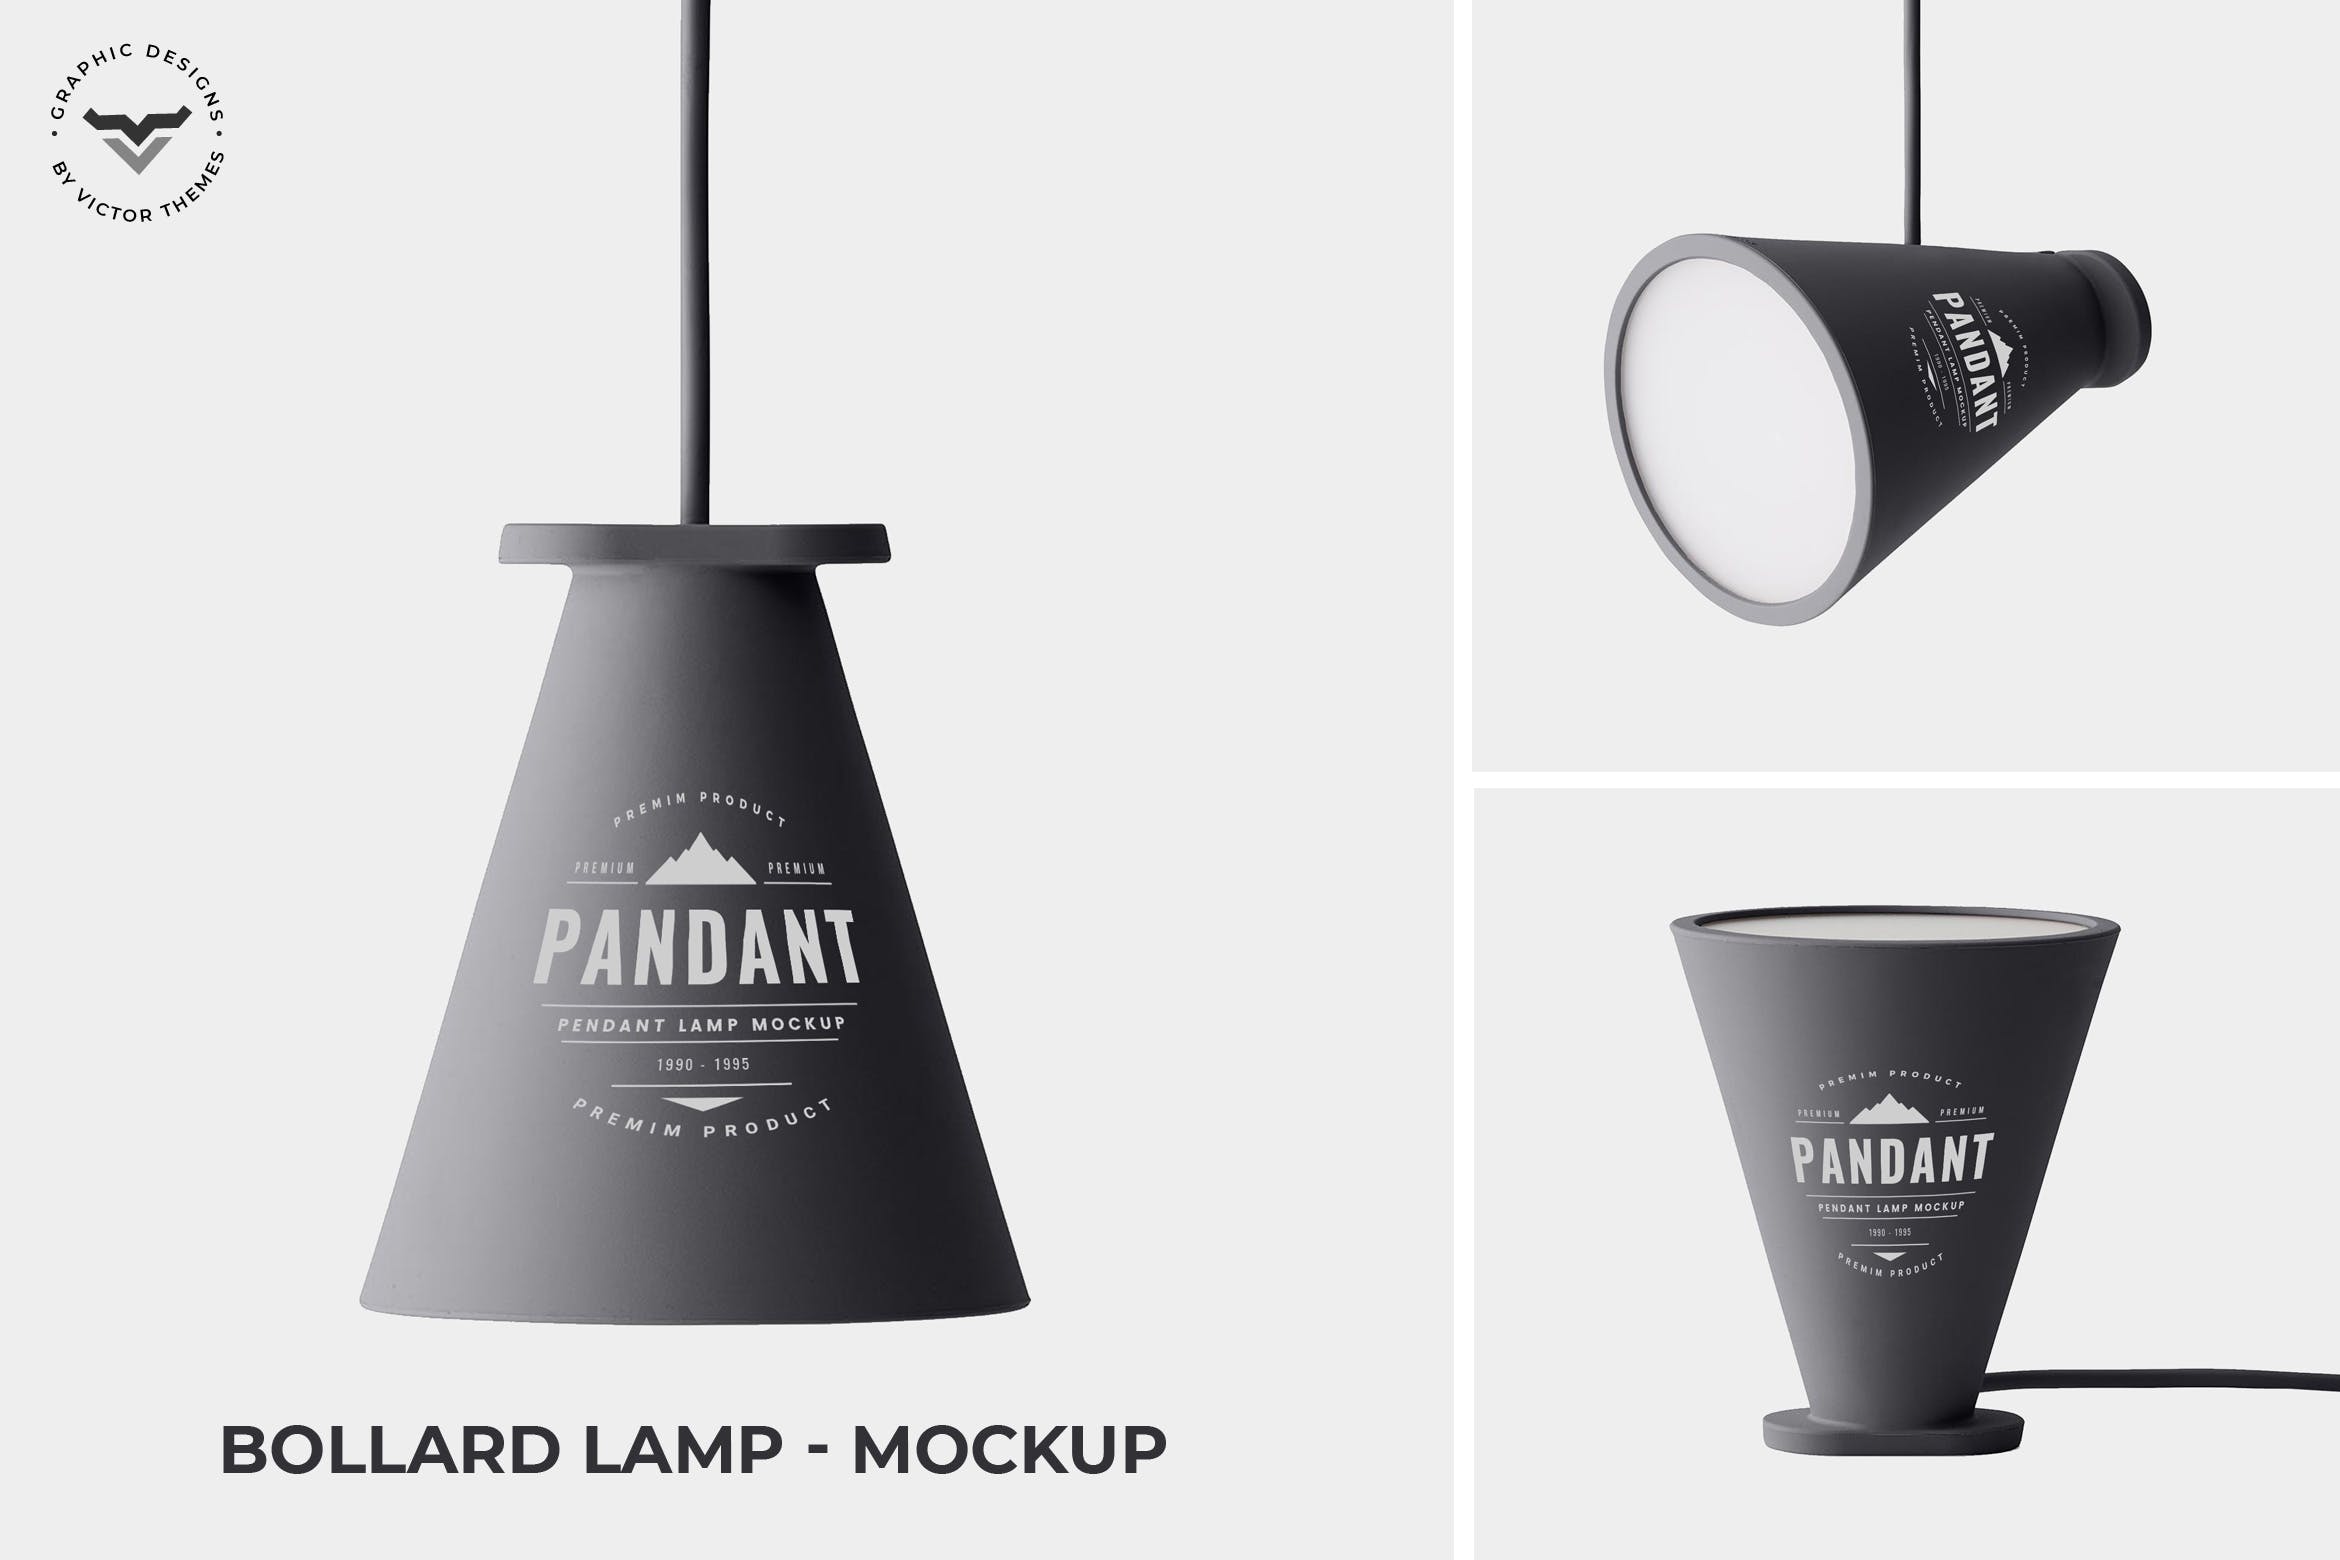 创意灯具设计效果图第一素材精选 Bollard Lamp Mockup插图